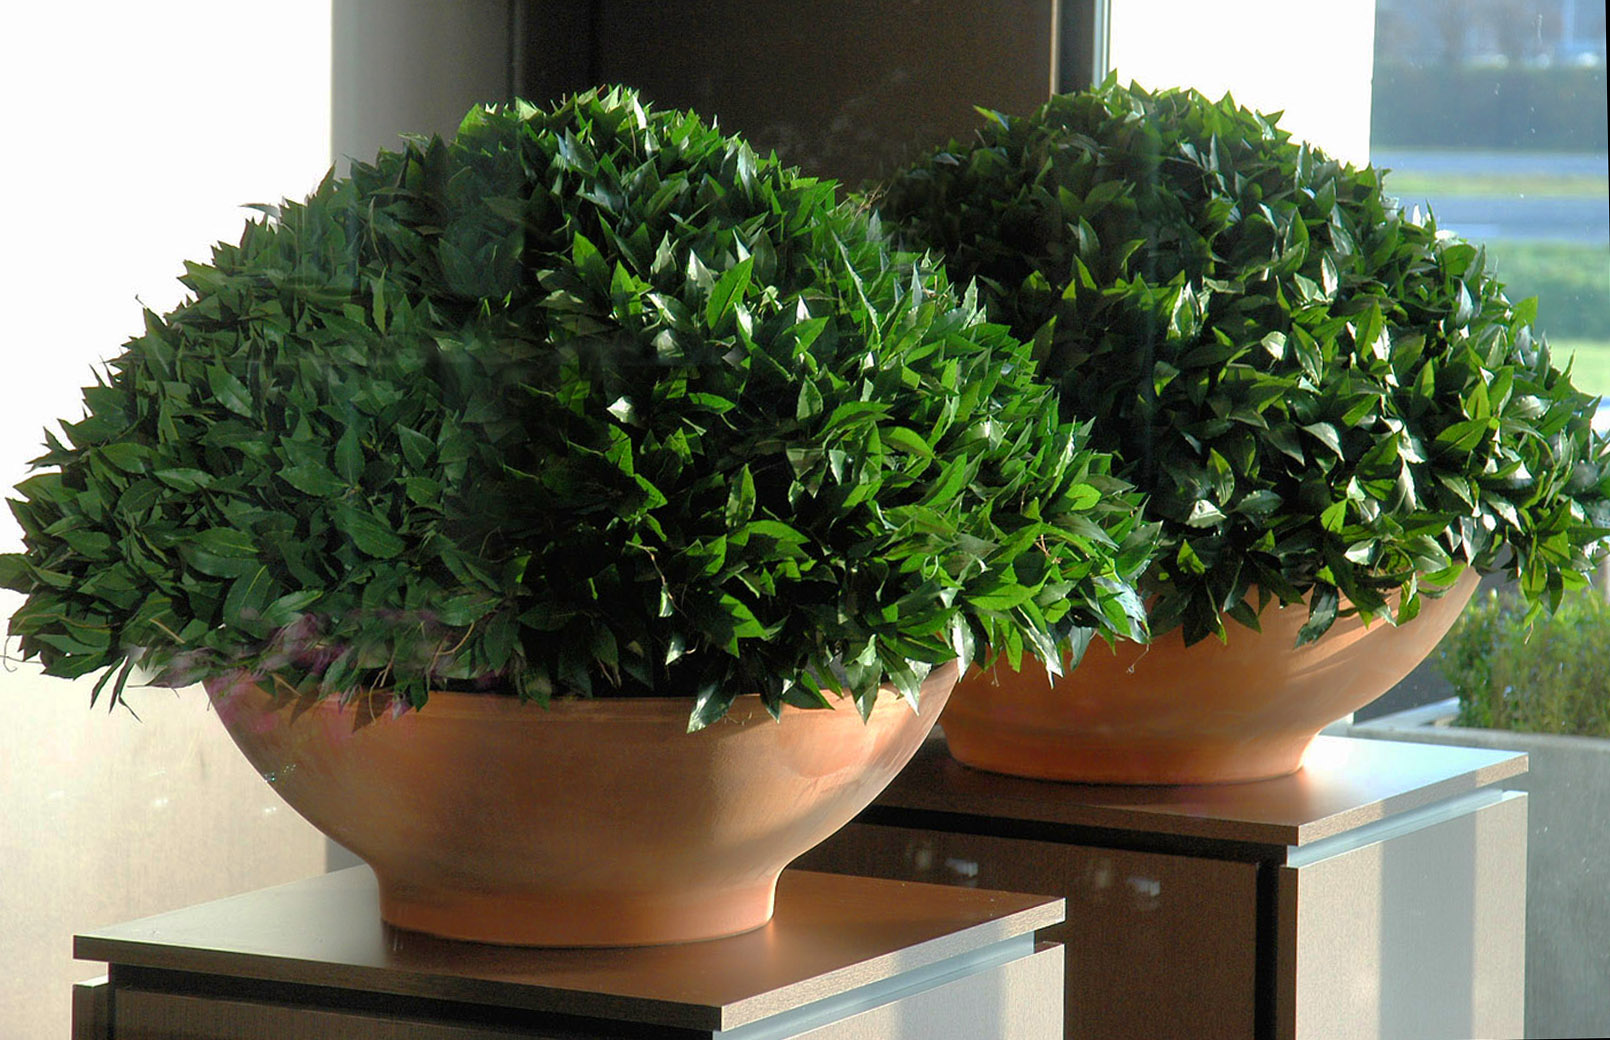 642 topiary bowls